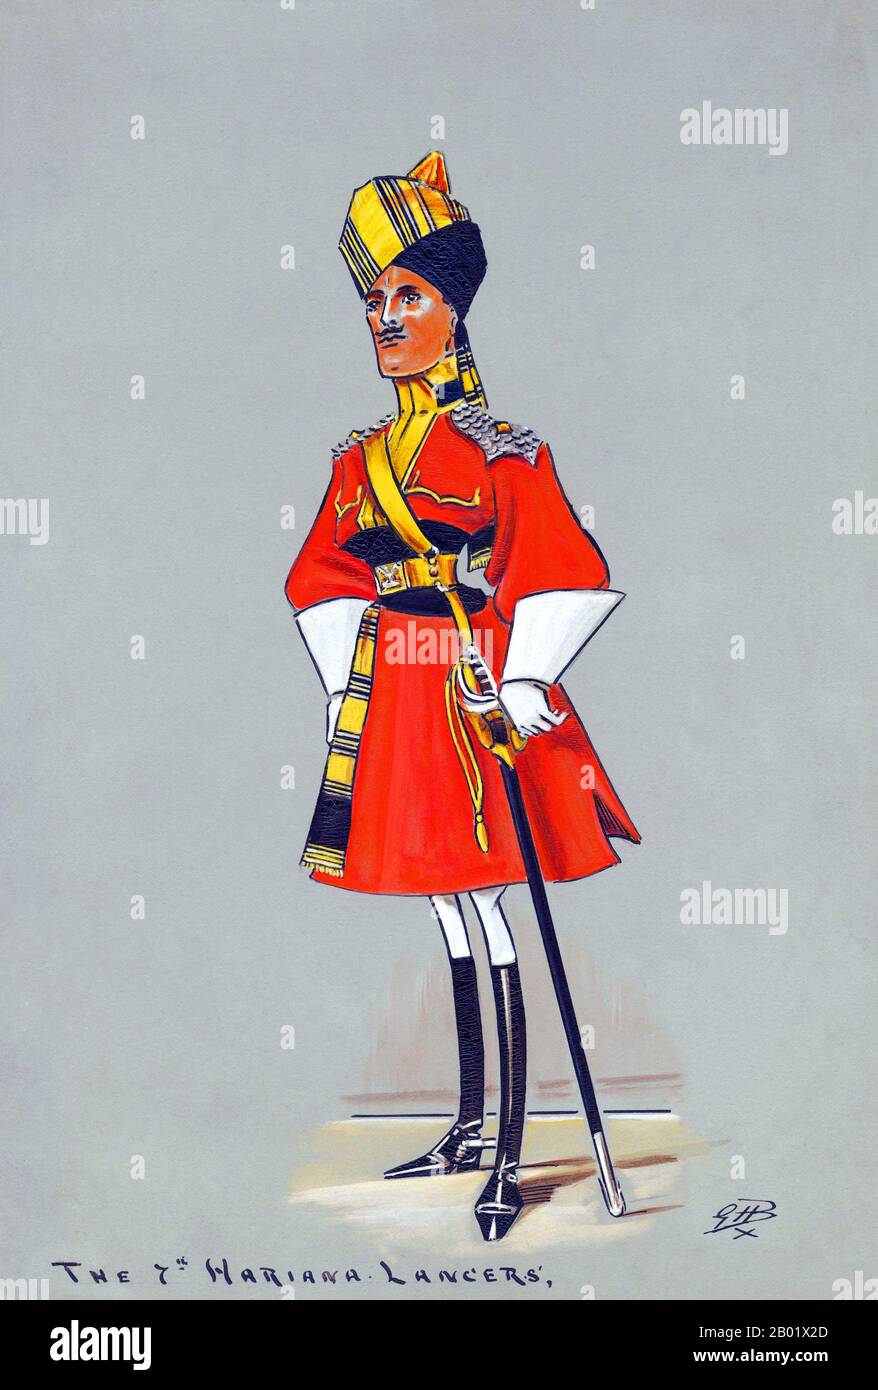 India: Ufficiale del 7th Hariana Lancers. Pittura gouache in stile caricatura di Godfrey Herbert Brennan (1875-1948), 1909. Il 7th Hariana Lancers fu formato nel 1846 come reggimento di cavalleria irregolare del Bengala, radunato a Meerut e Cawnpore dal capitano Liptrott. Il reggimento fu creato dopo la prima guerra sikh in previsione dell'inizio della seconda guerra. Quando scoppiò la seconda guerra sikh, non furono coinvolti in alcun combattimento ma si trovarono nella forza di riserva. Nel 1857, quando scoppiò la ribellione indiana, erano di stanza sulla frontiera nord-occidentale e rimasero fedeli. Foto Stock